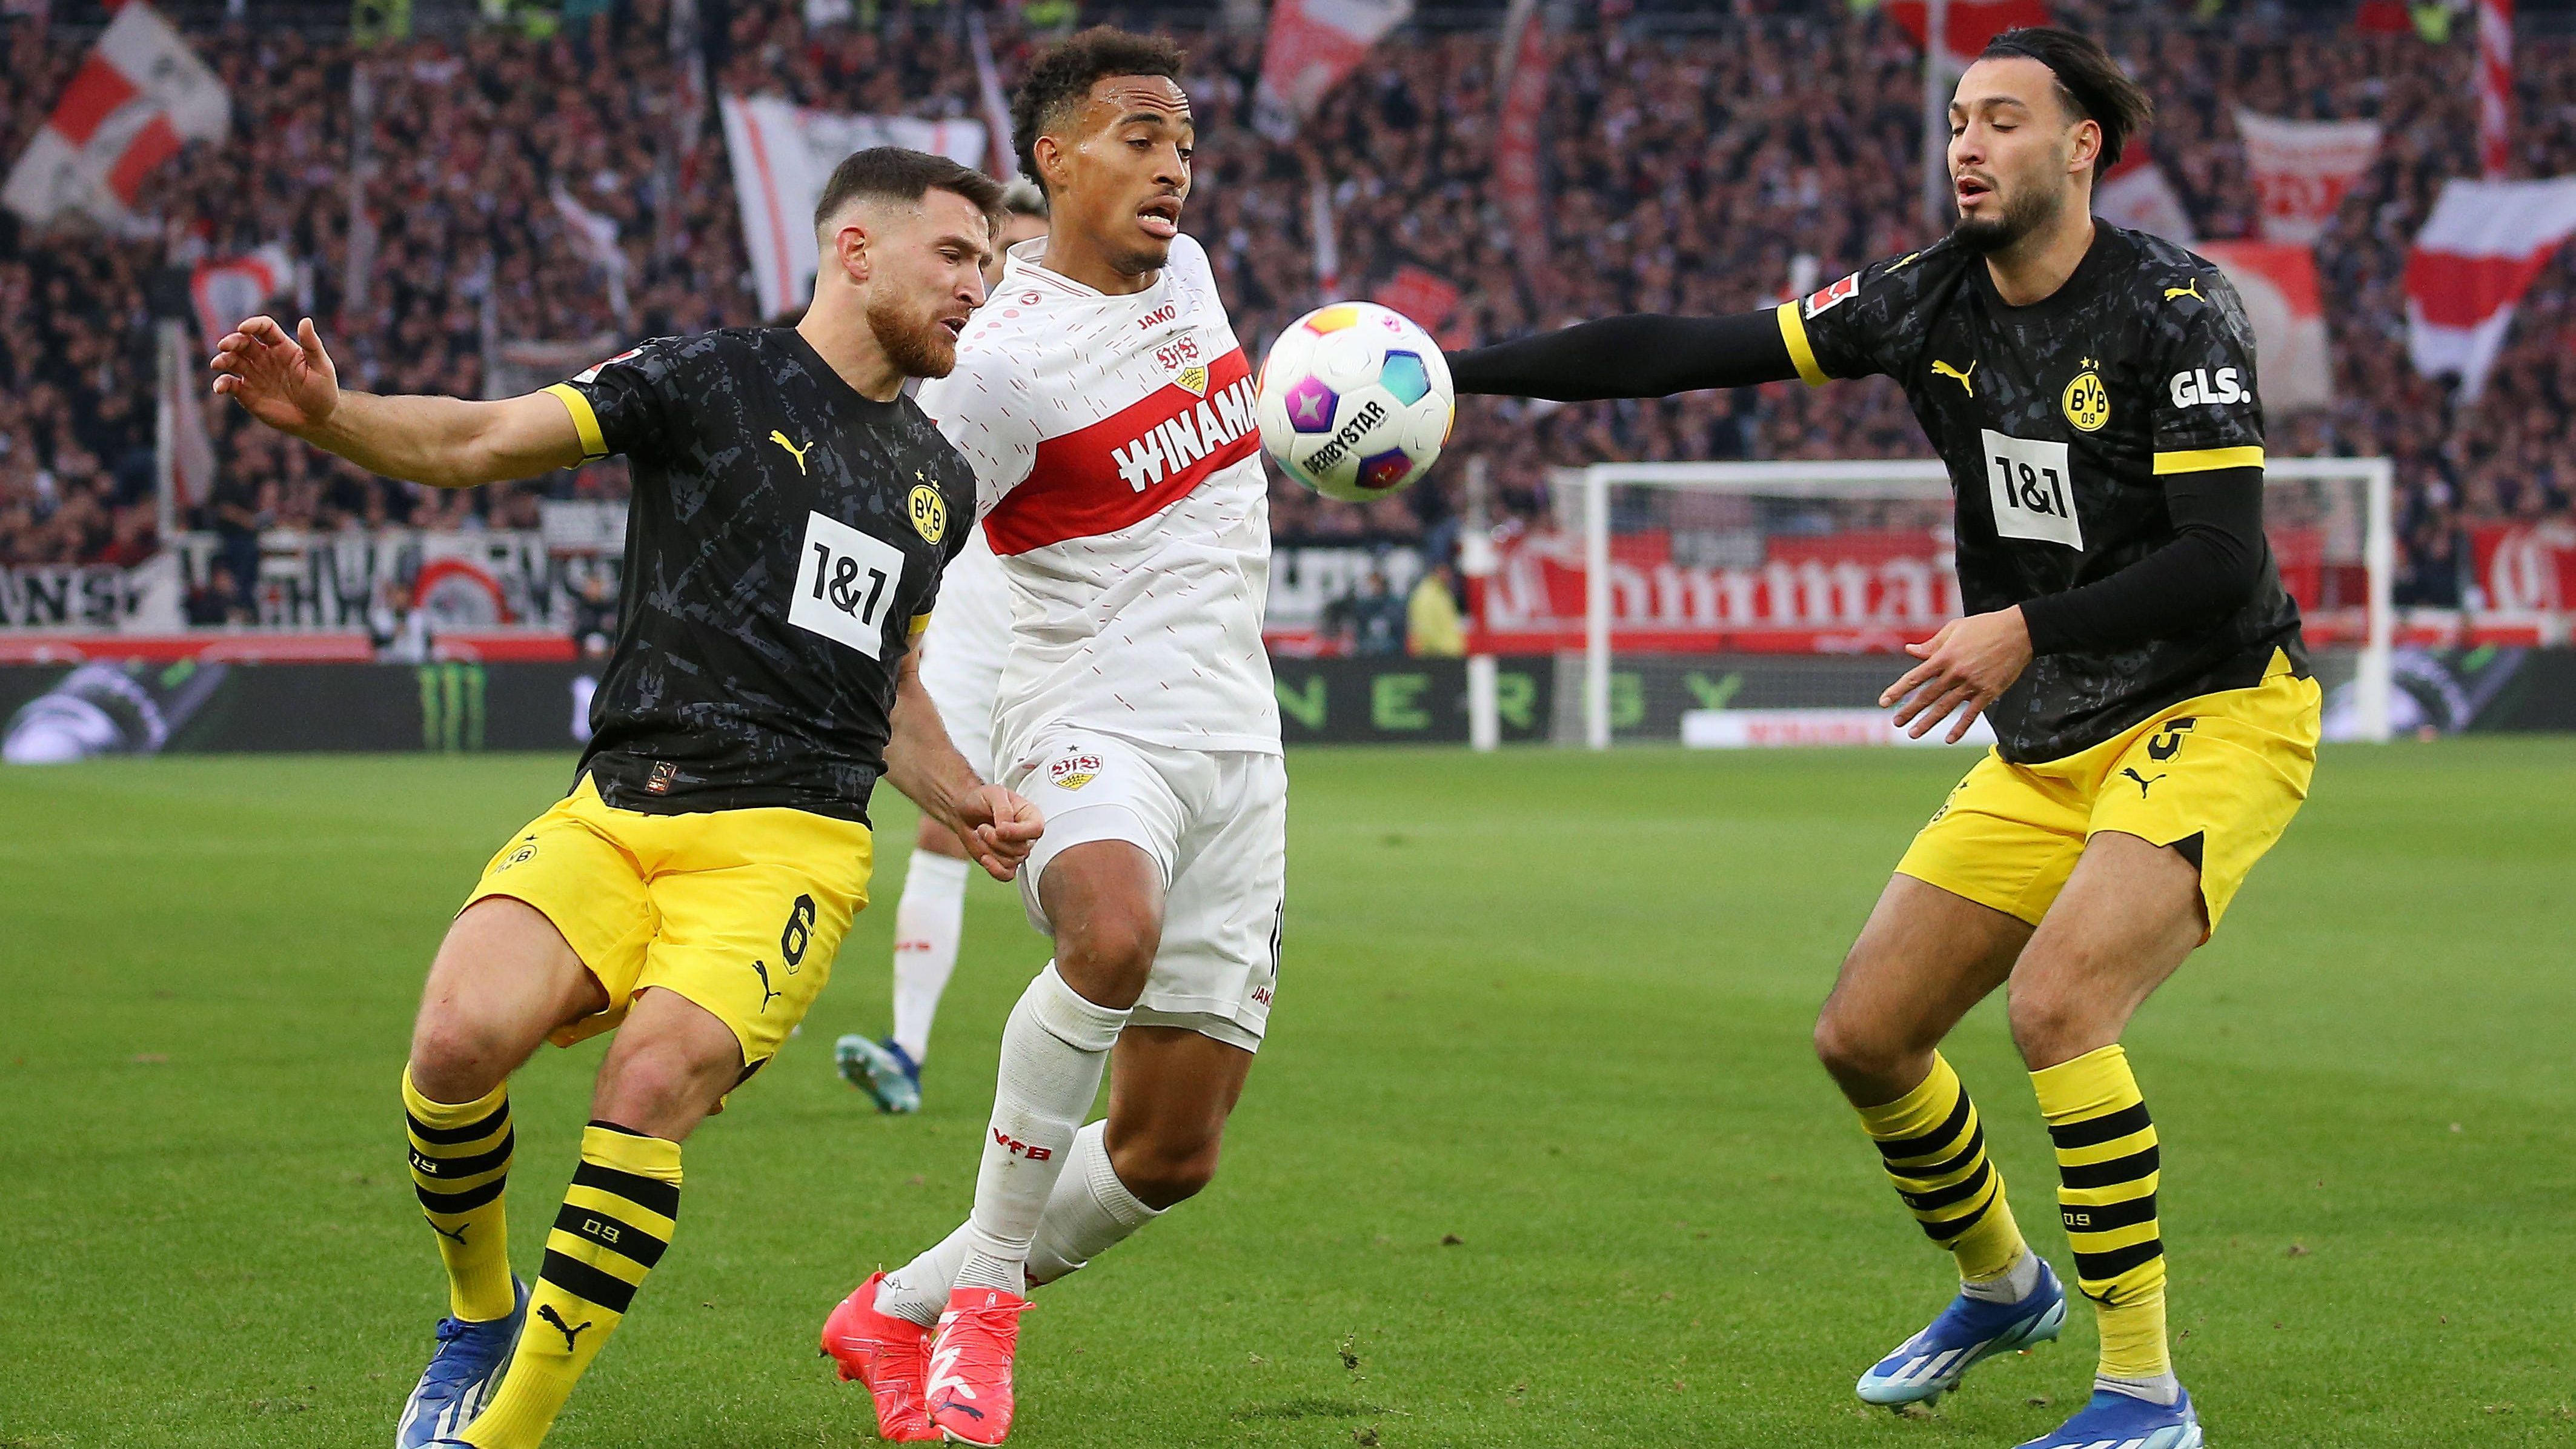 <strong>Stuttgart schlägt Dortmund im Spitzenspiel: Die ran-Noten zum Spiel</strong><br>Der VfB Stuttgart sendet ein echtes Ausrufezeichen und schlägt Borussia Dortmund im Spitzenspiel der Bundesliga mit 2:1 (1:1). Während beim VfB Serhou Guirassy ein Traum-Comeback feiert, enttäuscht der BVB nahezu komplett. <em><strong>ran</strong></em> hat die Noten zum Spiel.